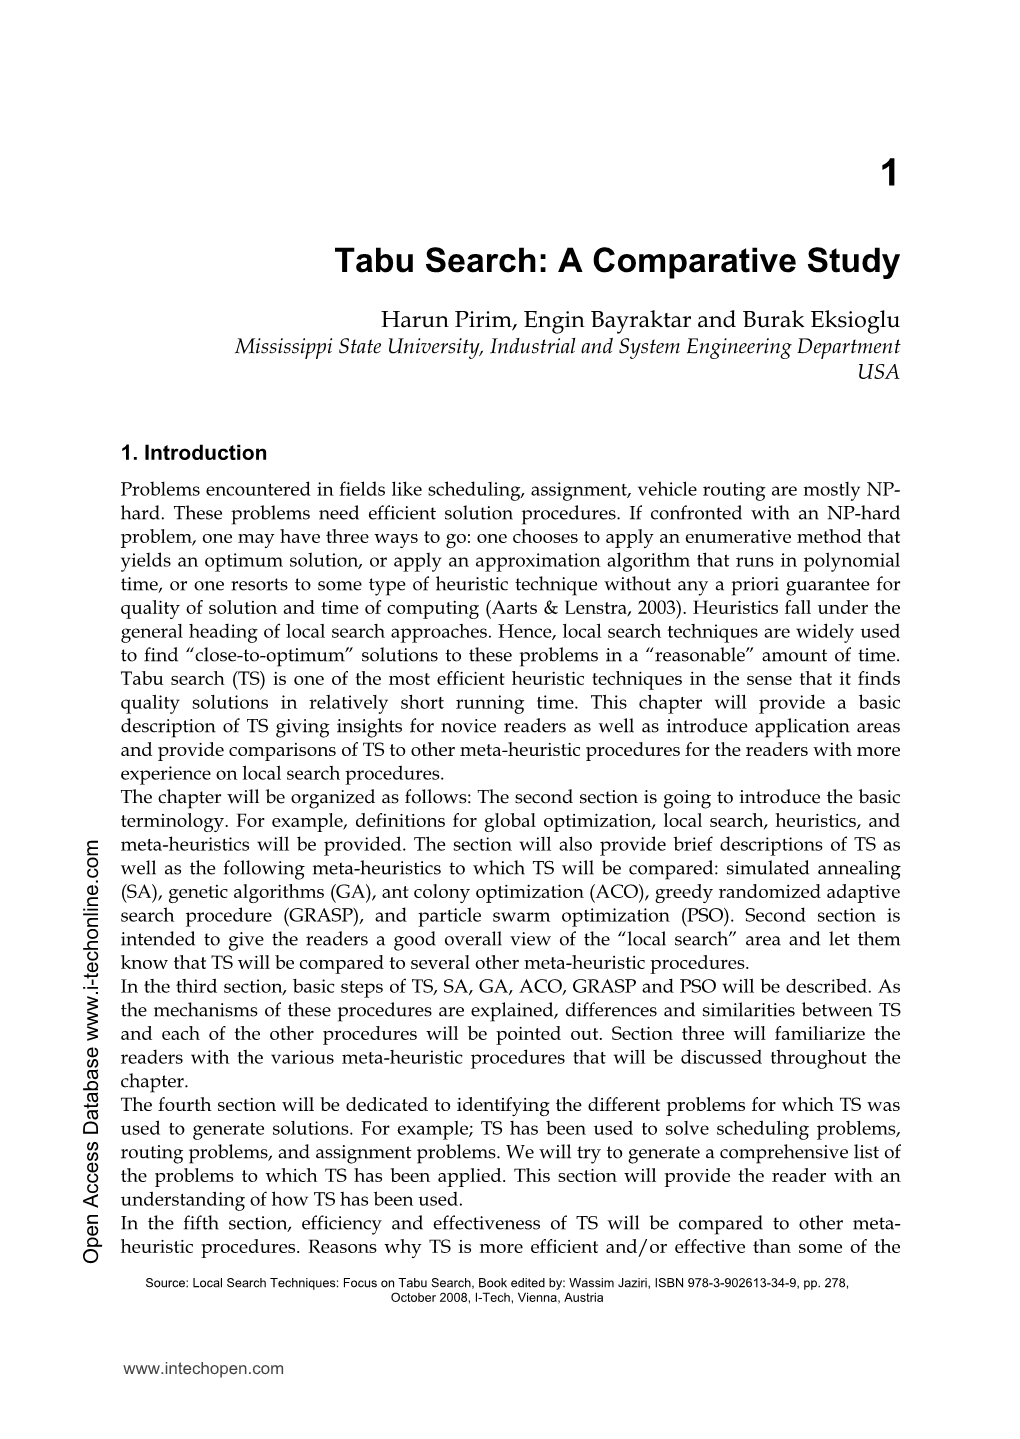 Tabu Search: a Comparative Study